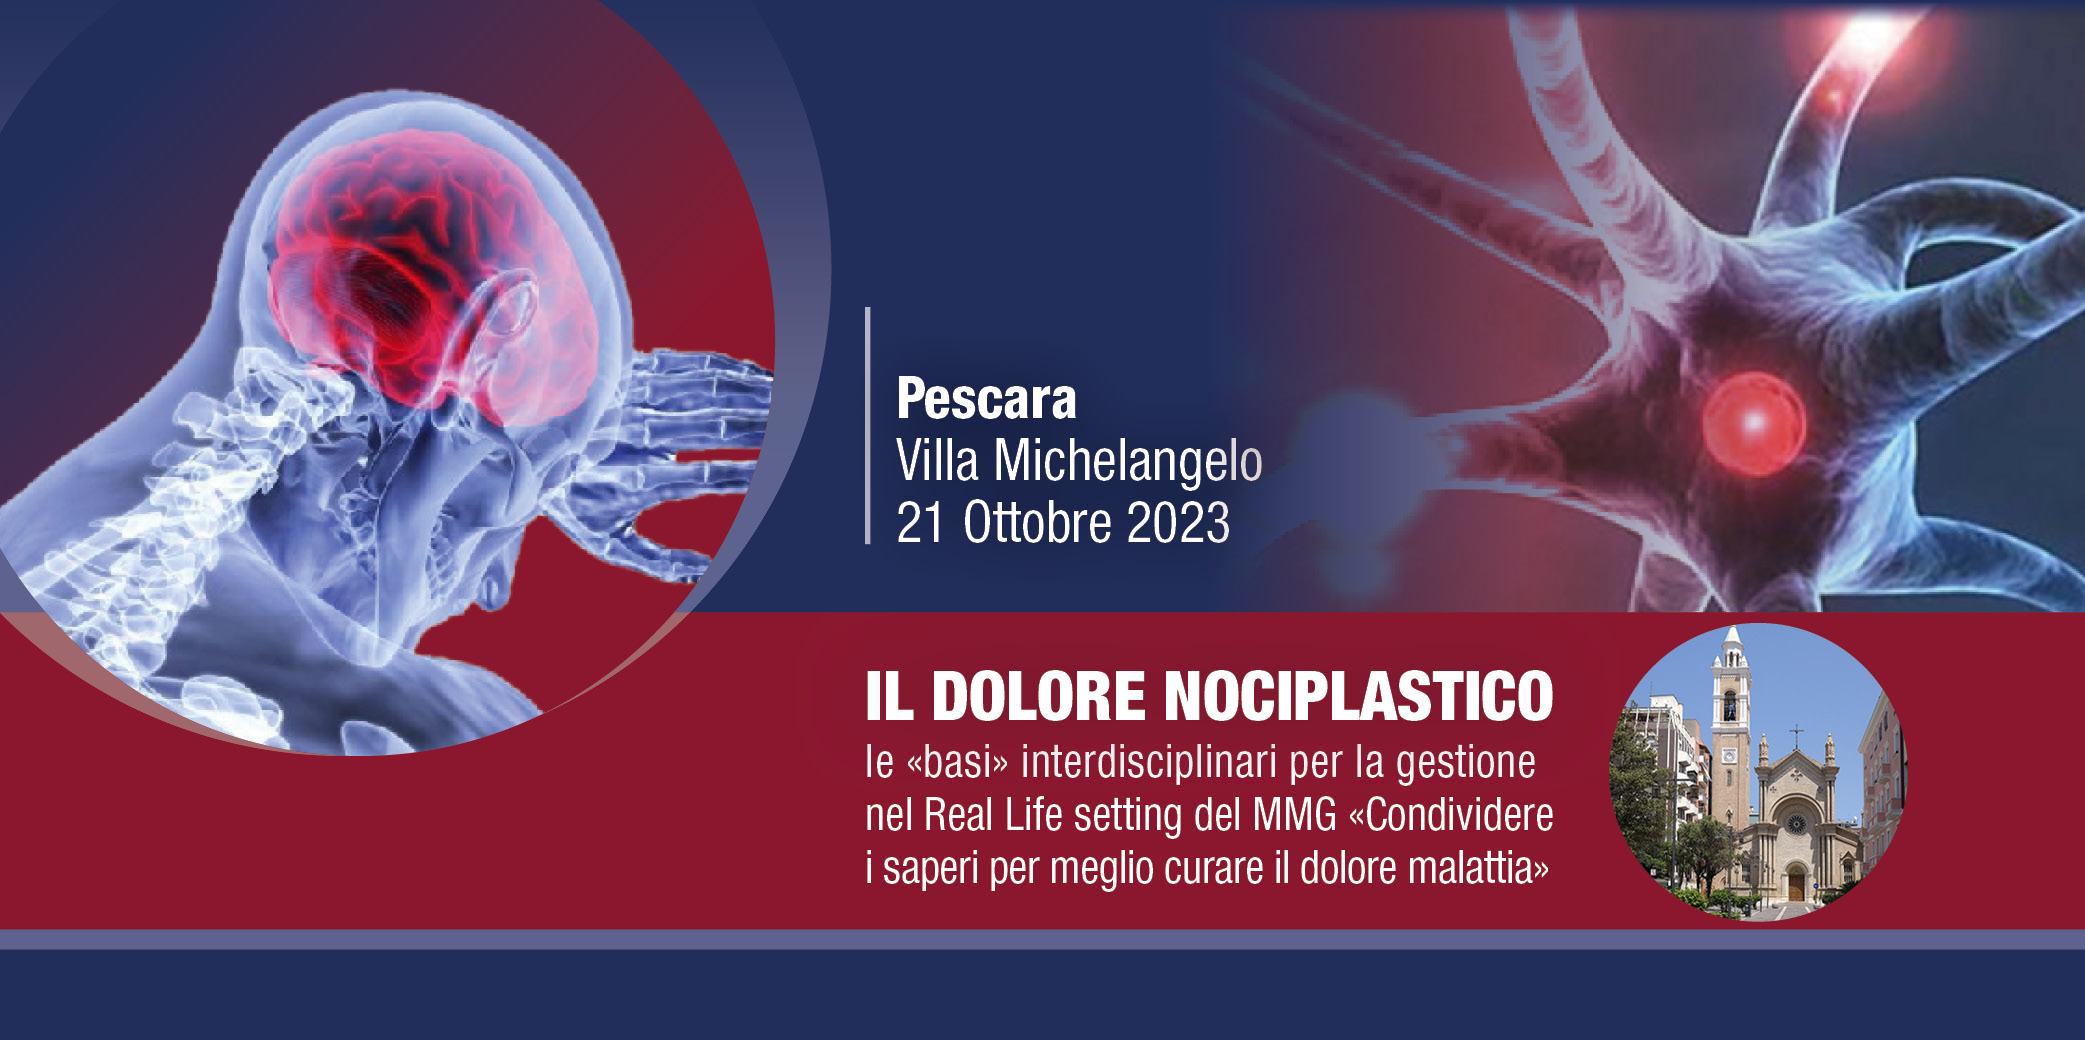 IL DOLORE NOCIPLASTICO – Pescara, 21 Ottobre 2023